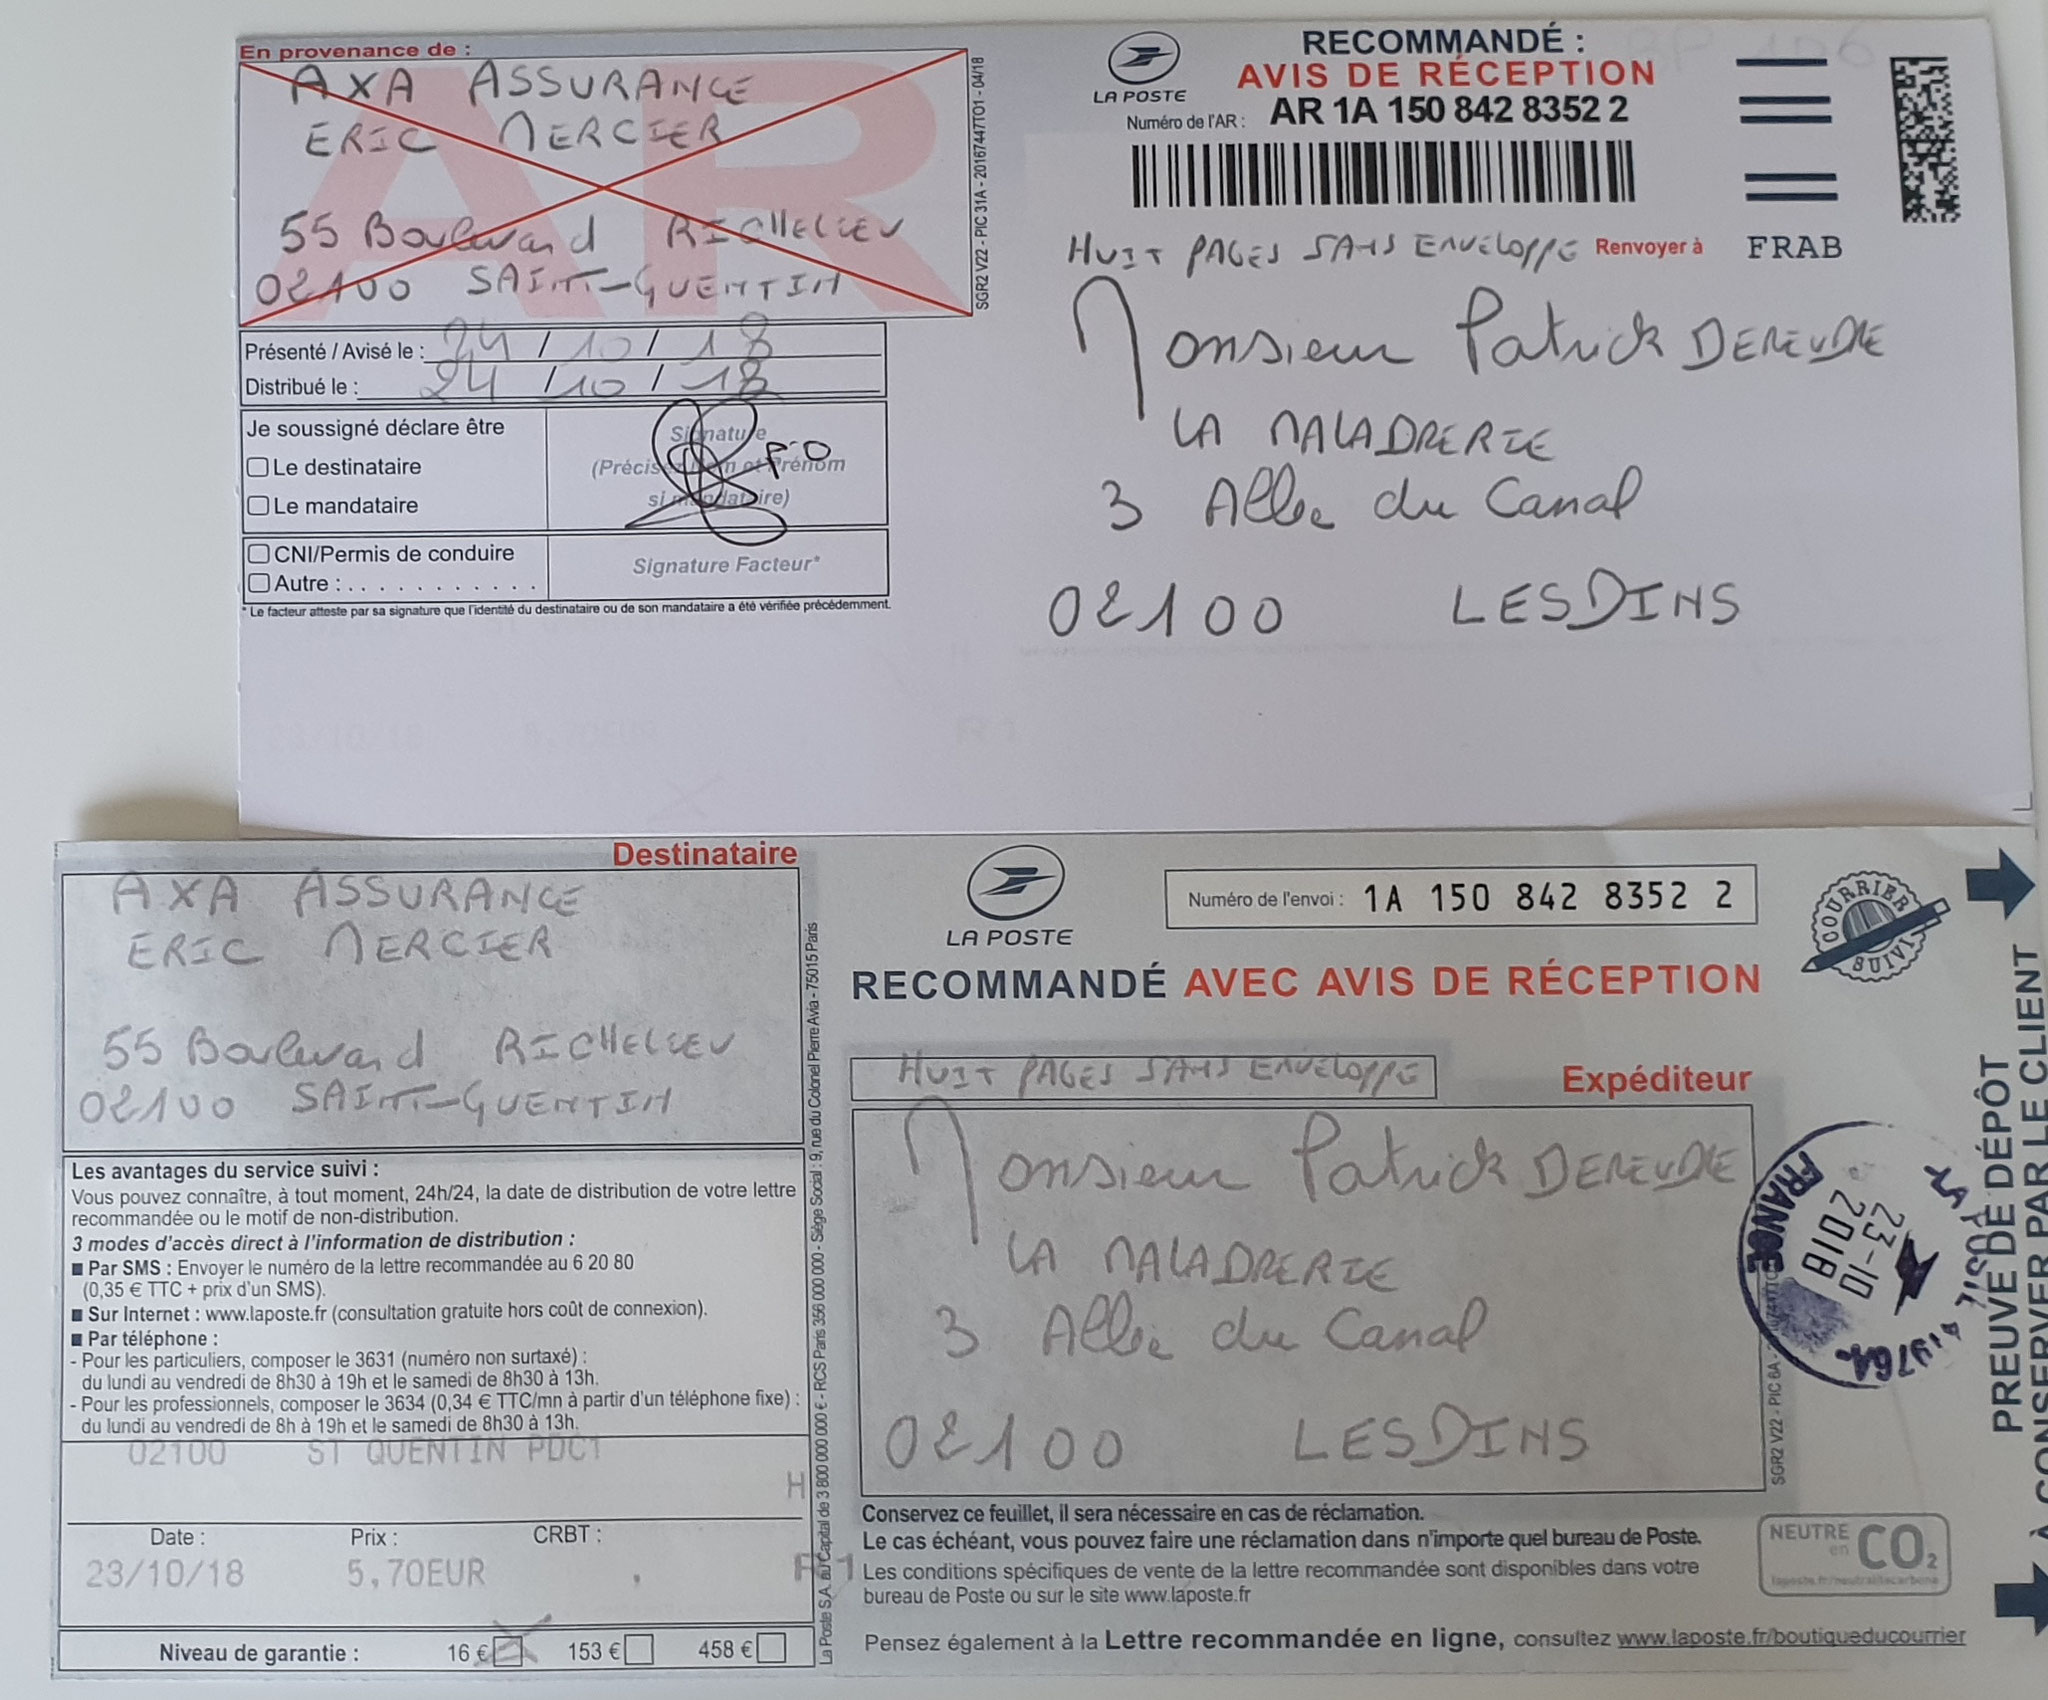 Le 23 Octobre 2018 j'adresse à AXA une LRAR N0 1A 150 842 8352 2 (huit pages) www.jenesuispasunchien.fr www.jesuisvictime.fr www.jesuispatrick.fr PARJURE & CORRUPTION